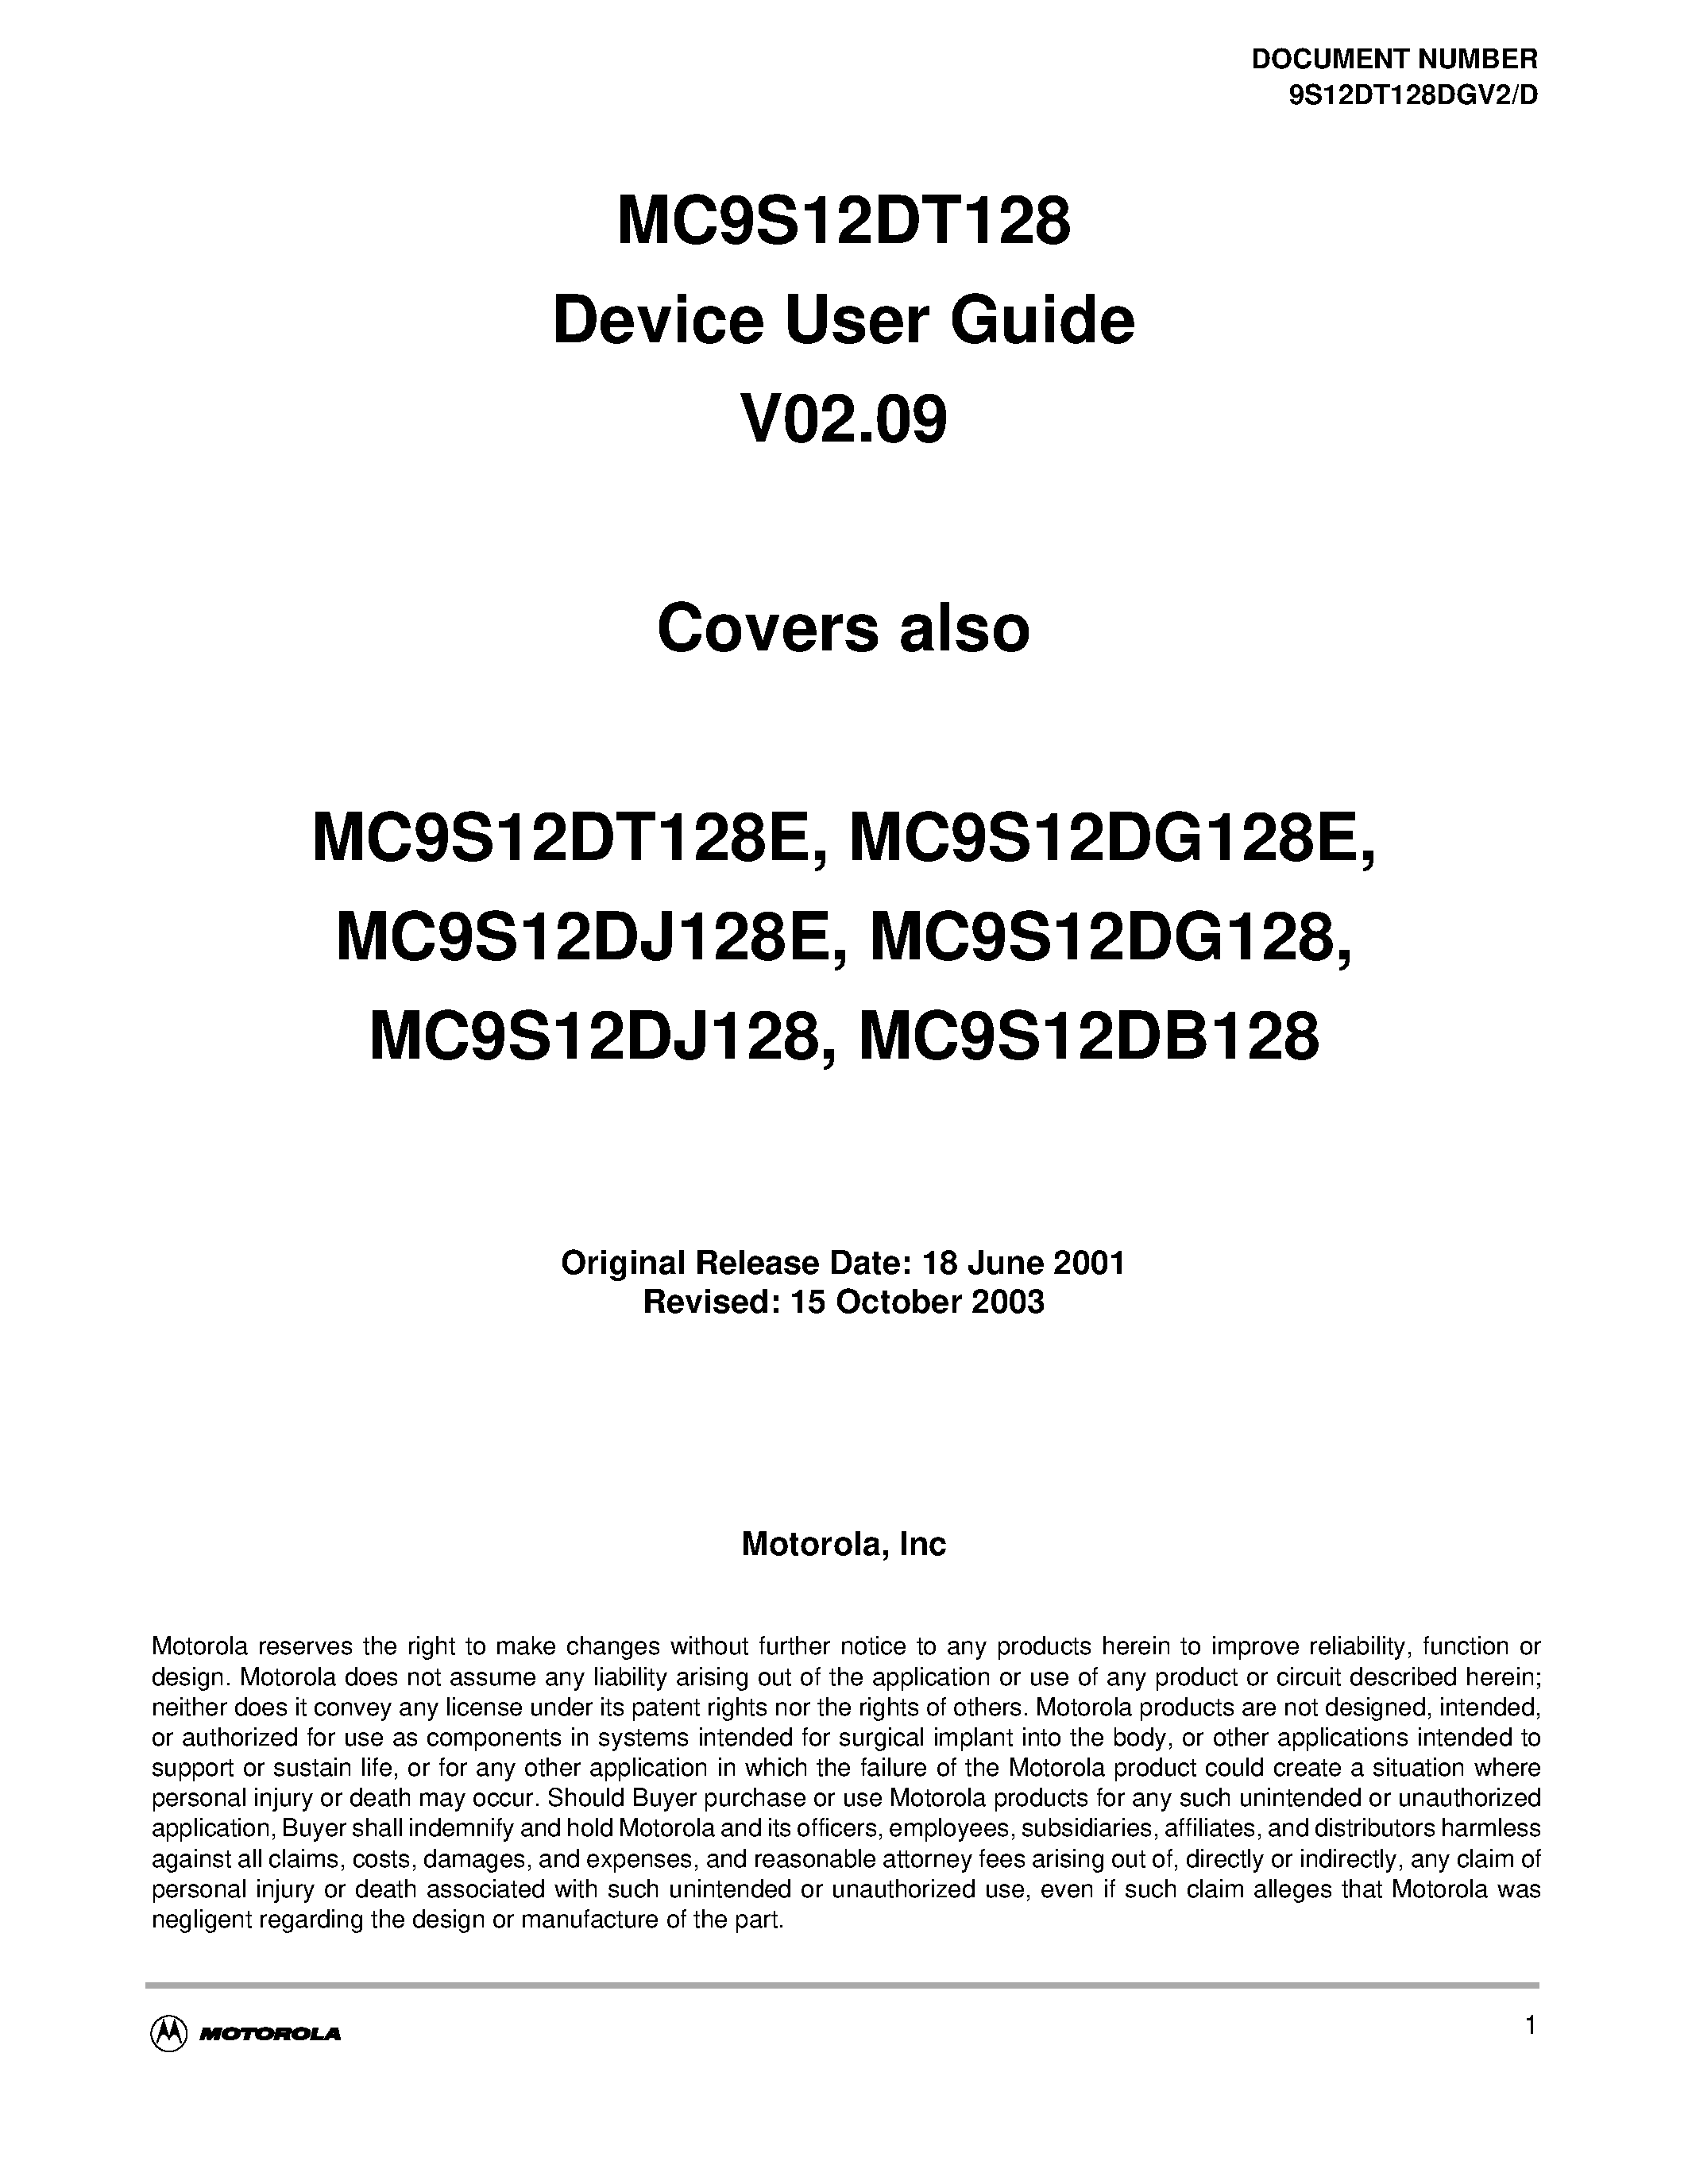 Даташит S12FTS128KV2 - MC9S12DT128 Device User Guide V02.09 страница 1